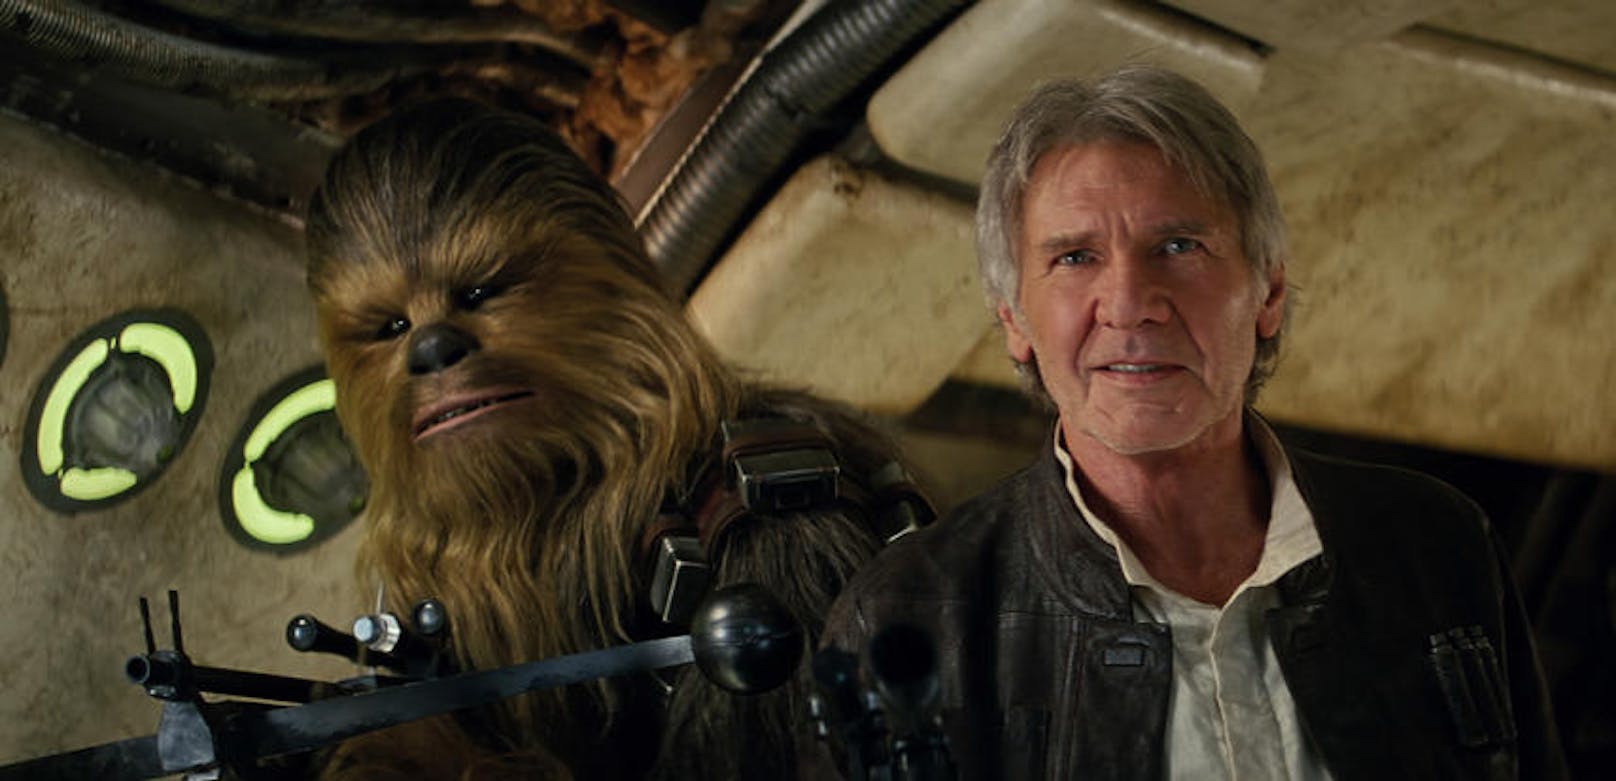 Chewie und Han in "Star Wars Episode VII: Das Erwachen der Macht"